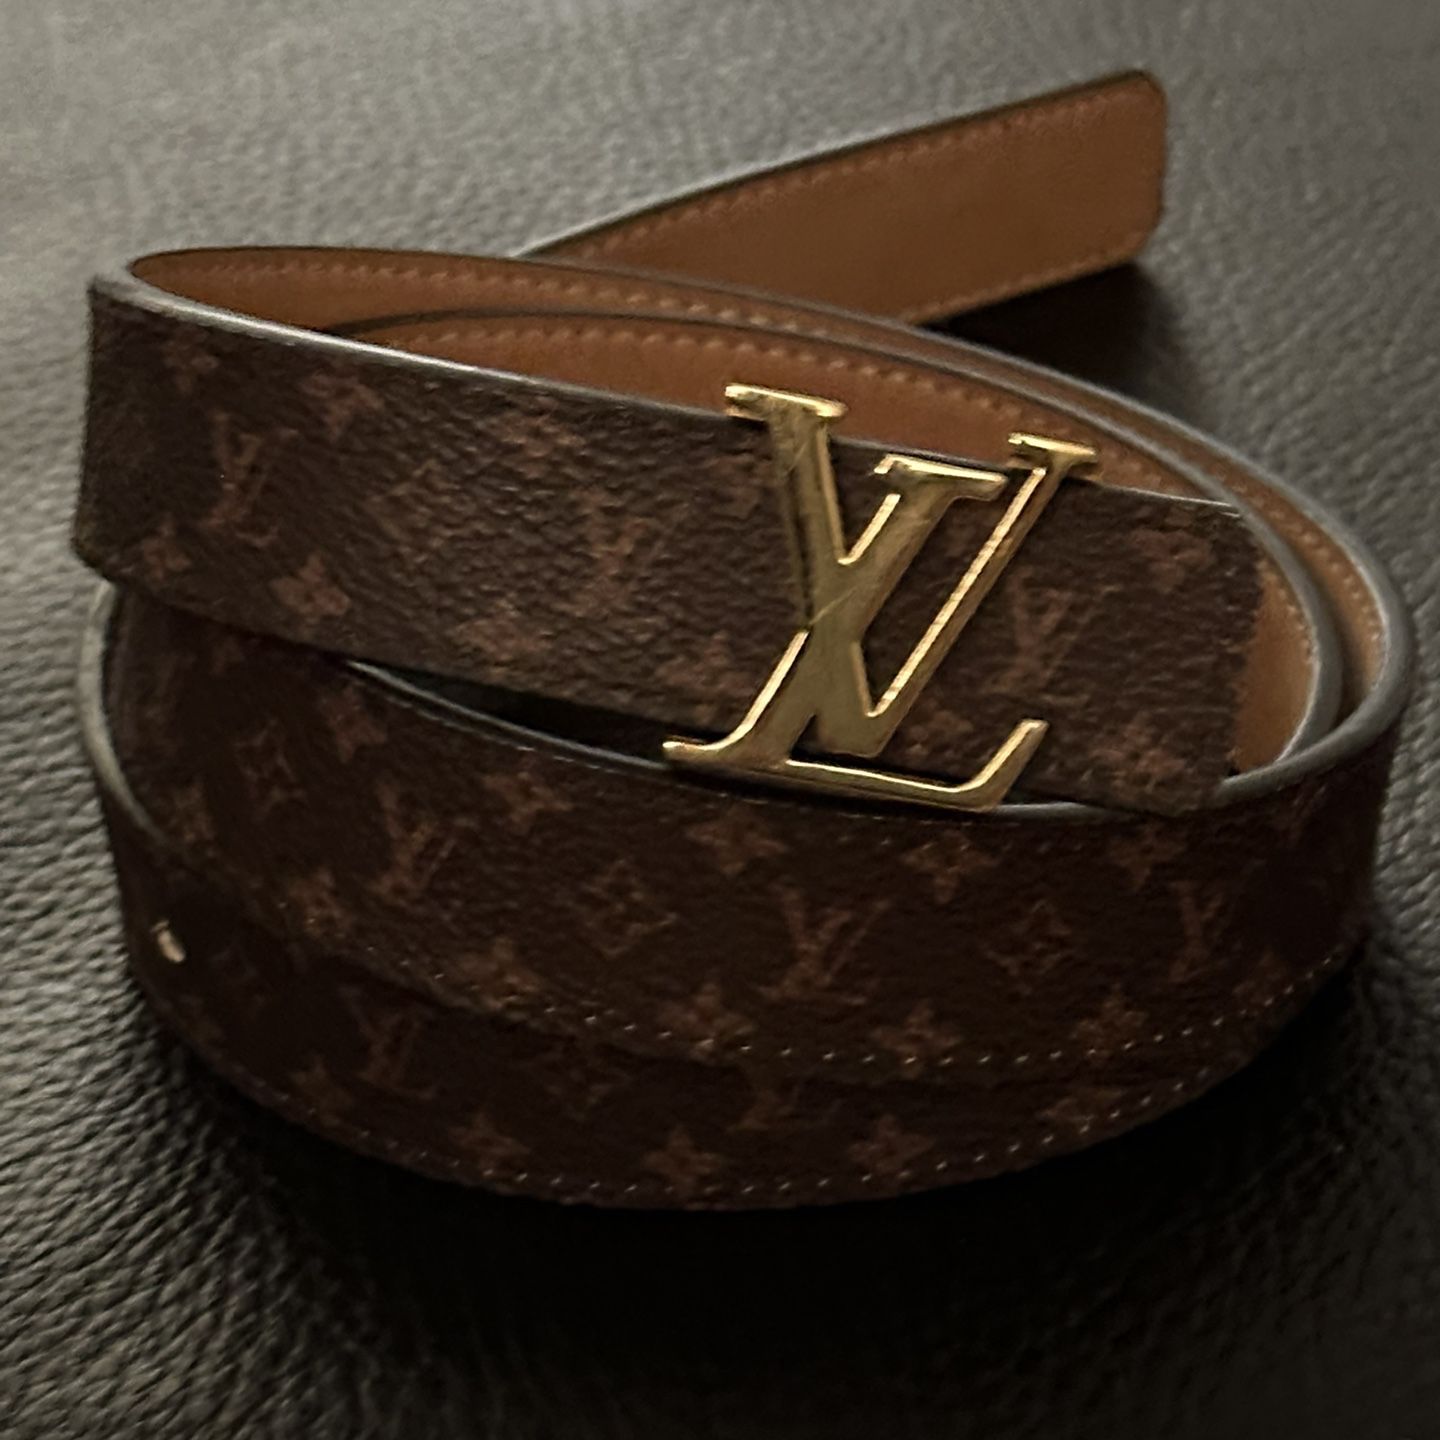 Louis Vuitton Belts – Devoshka